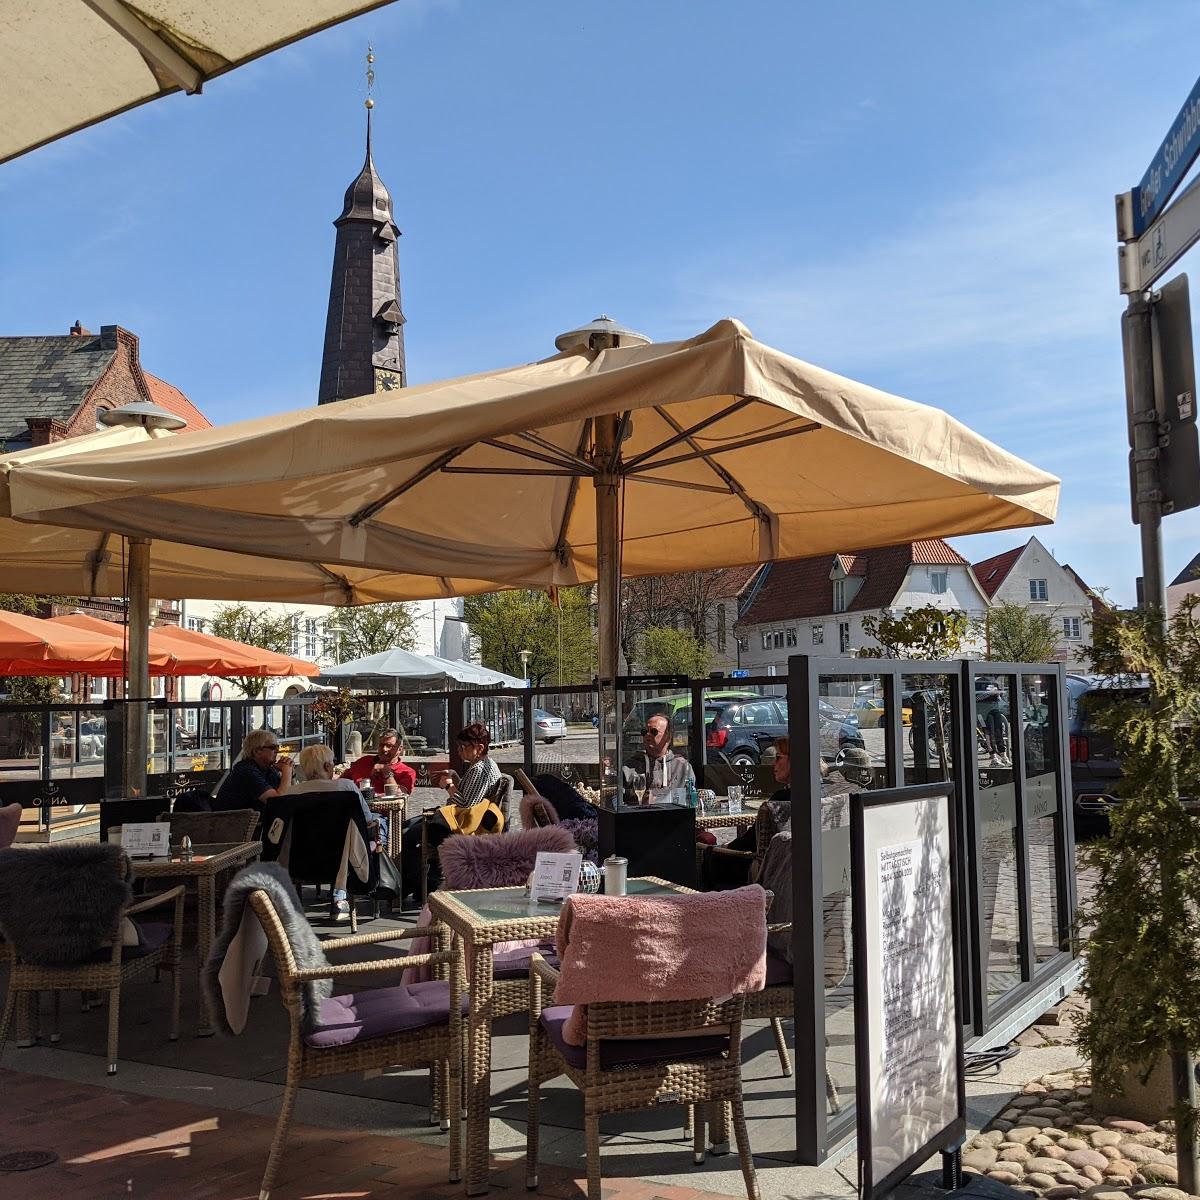 Restaurant "Restaurant & Hotel Stilbruch" in  Glückstadt